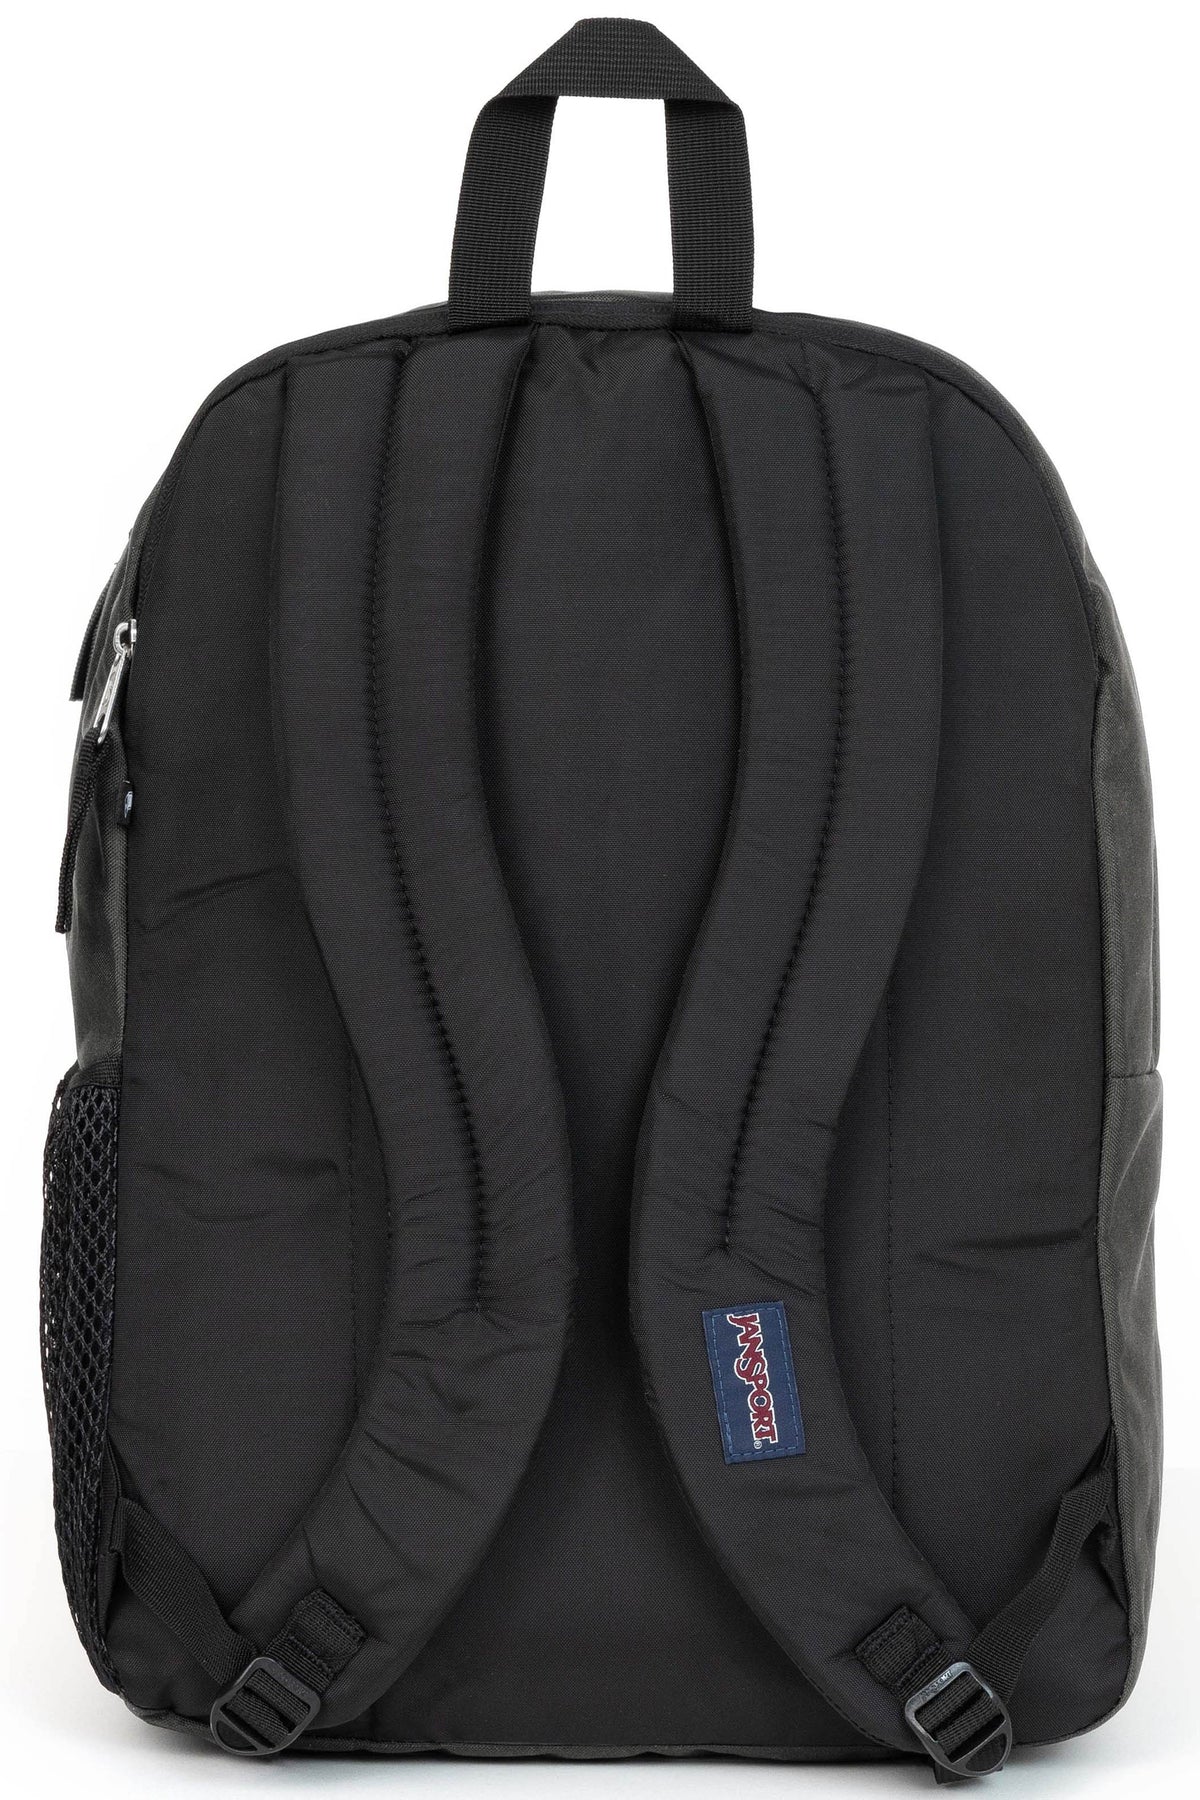 Jansport Big Student Backpack - Graphite Grey